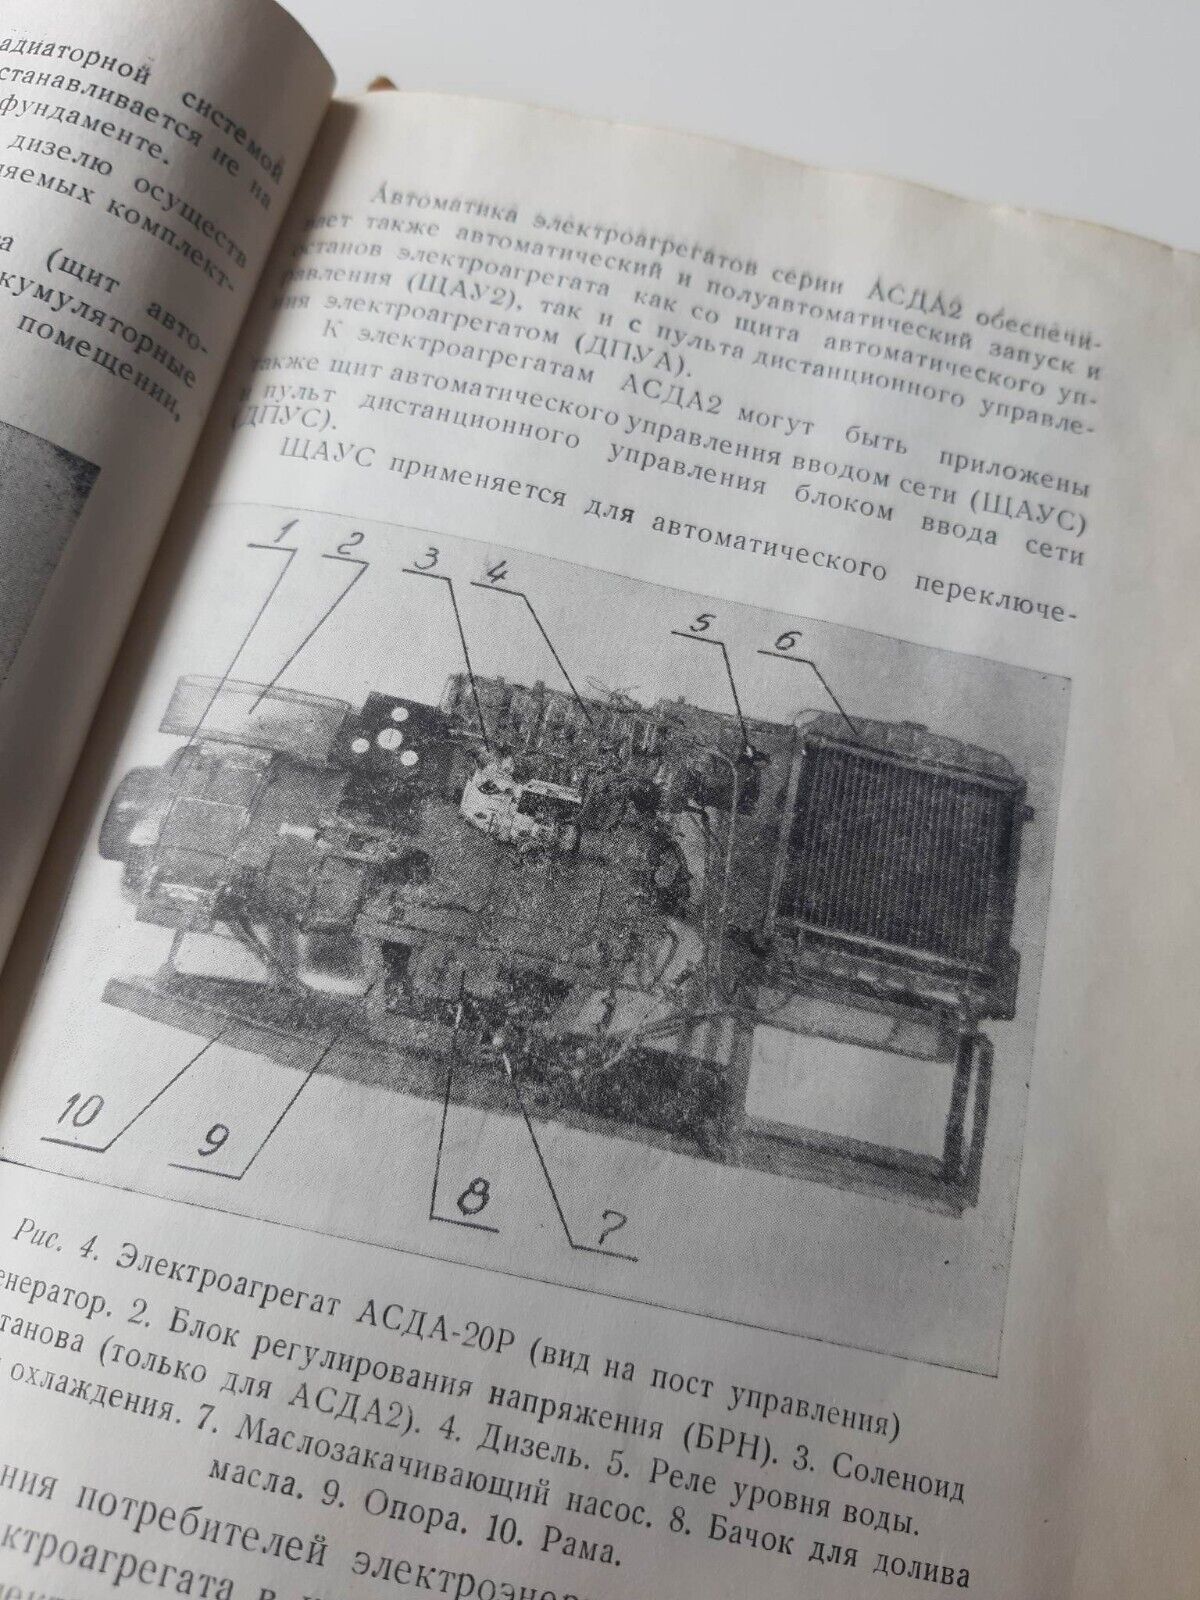 Soviet bunker diesel generator manual